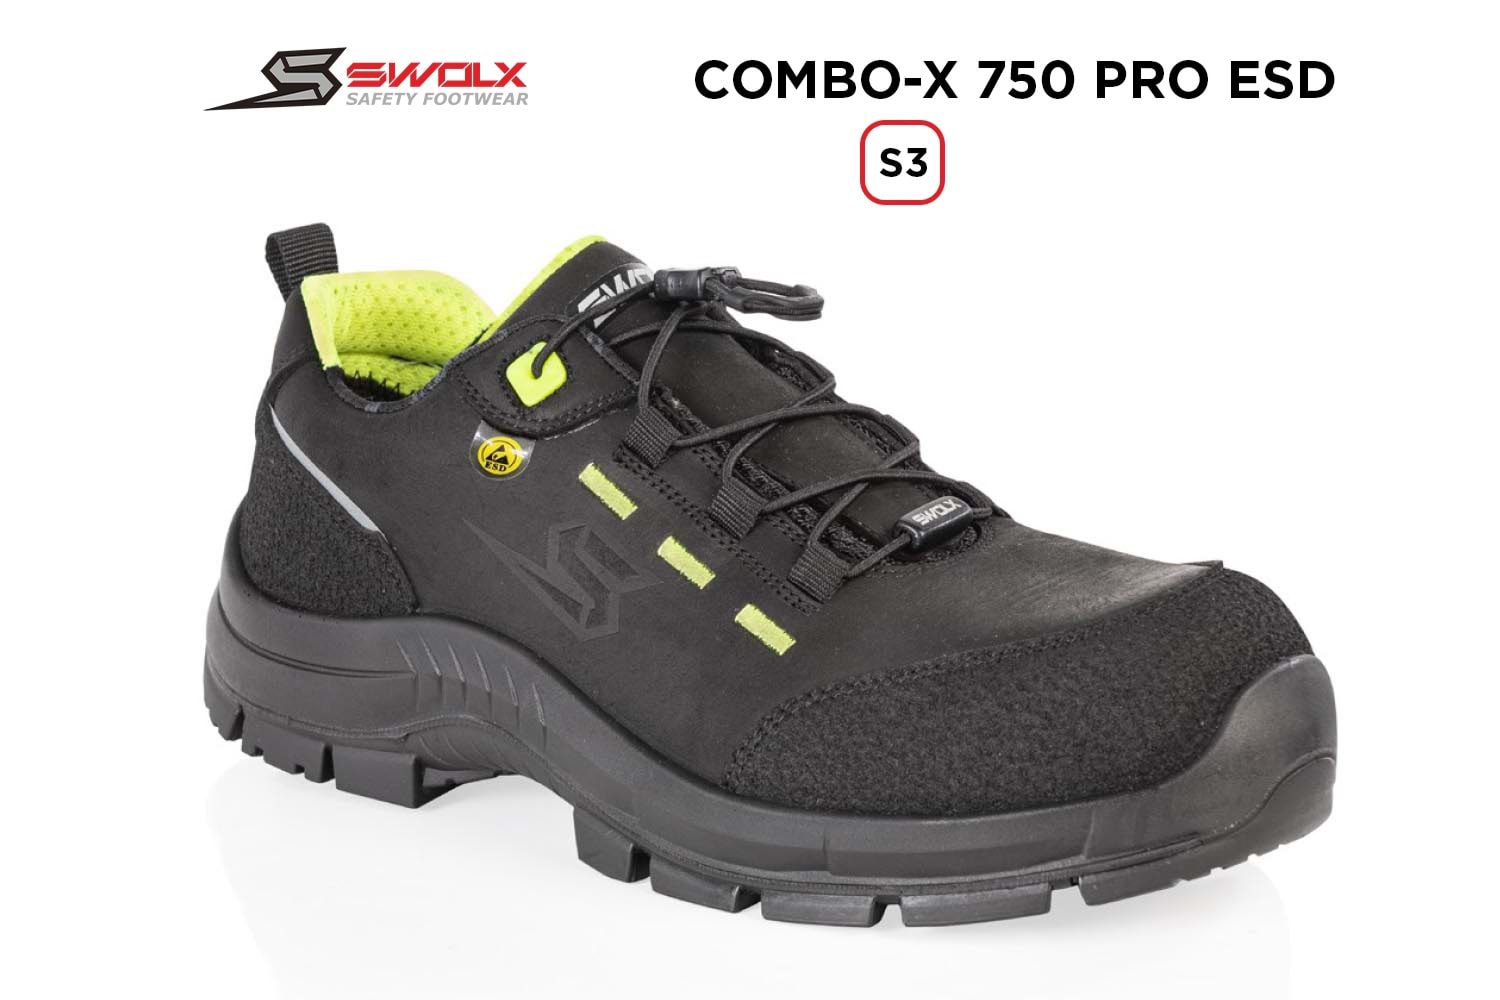 Swolx İş Ayakkabısı - Combo-X Pro Esd 750 S3 - 43